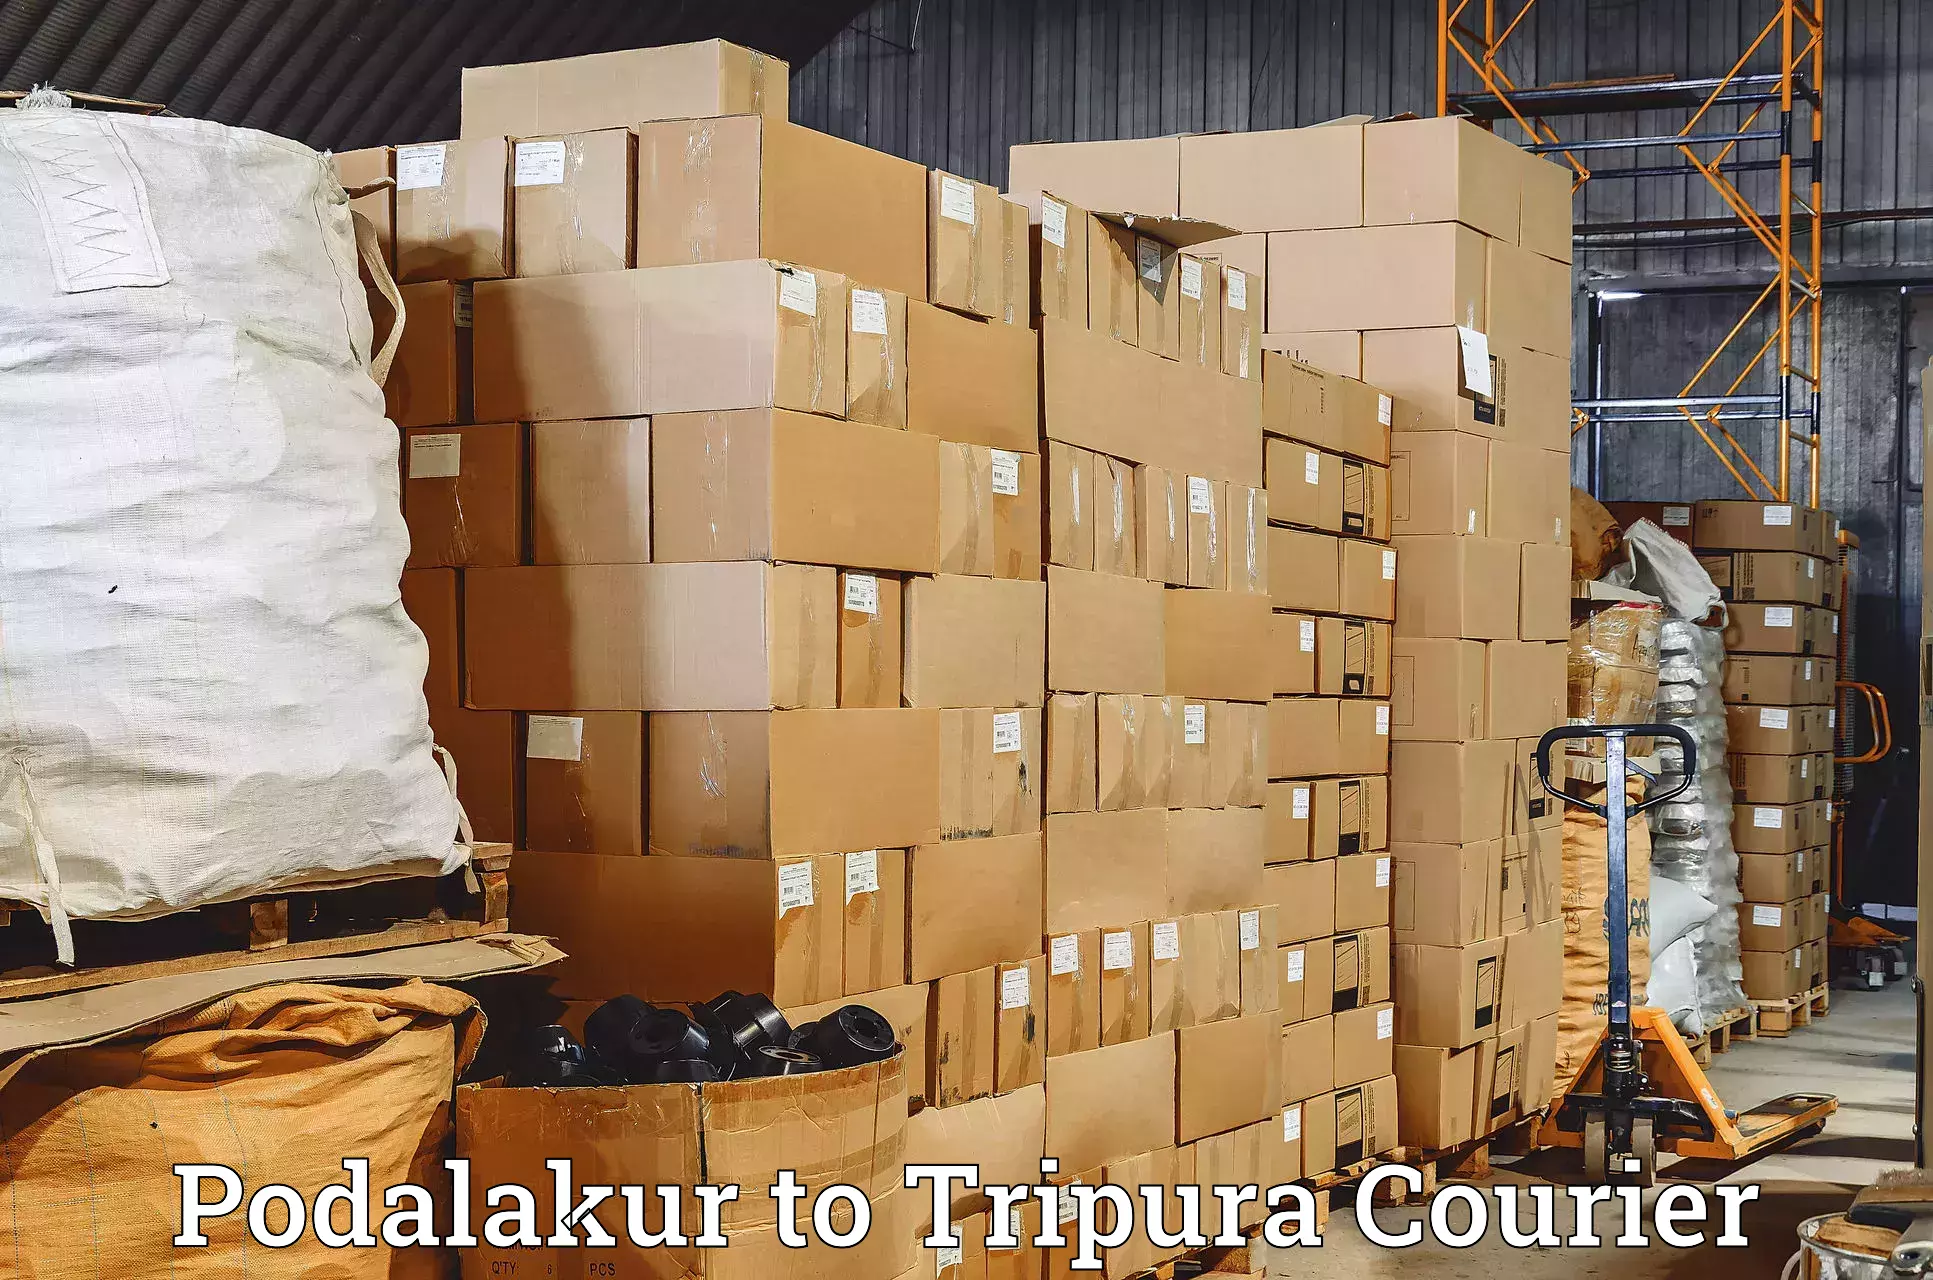 Courier service innovation Podalakur to Teliamura